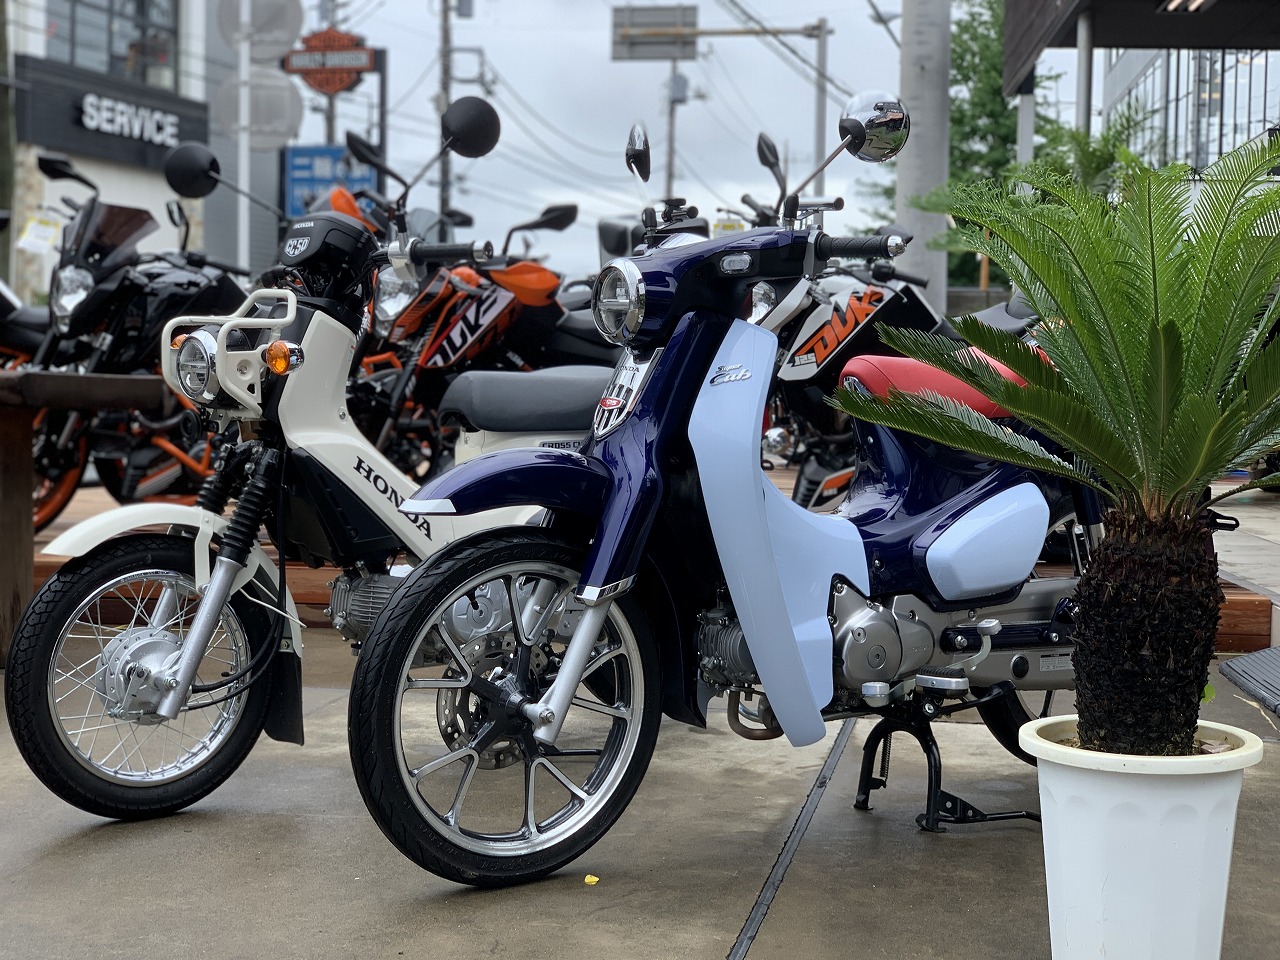 特選中古車 スーパーカブｃ125 クロスカブ50ございます 最新情報 U Media ユーメディア 中古 バイク 新車バイク探しの決定版 神奈川 東京でバイク探すならユーメディア